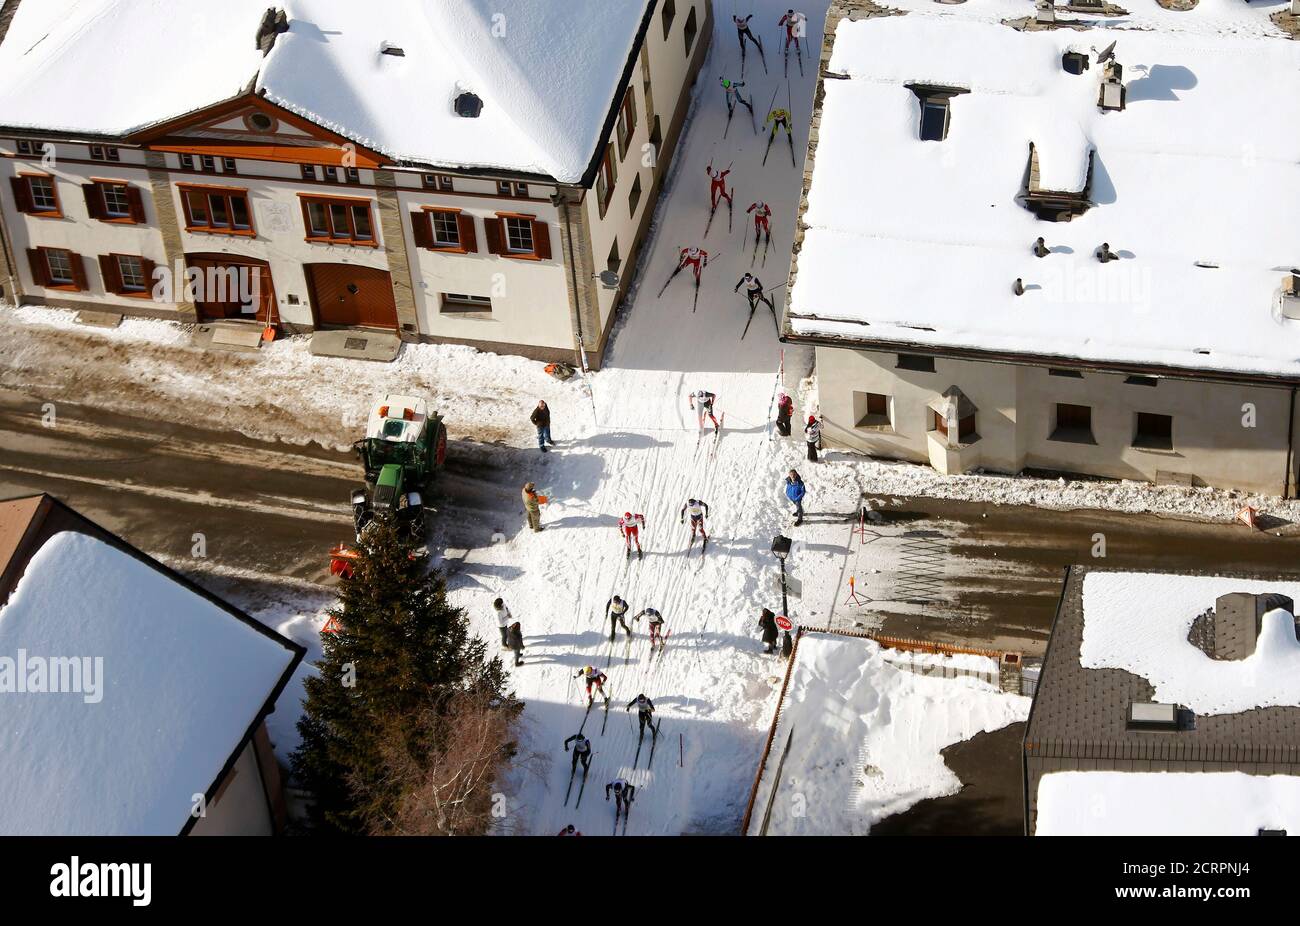 Una vista aerea mostra gli sciatori di fondo che corrono durante la Maratona sciistica di Engadin nel villaggio di la Punt 8 marzo 2015. Secondo gli organizzatori, più di 13,000 sciatori hanno partecipato alla gara di 42 km (26 miglia) tra Maloja e S-chanf vicino alla stazione sciistica svizzera di St. Moritz. REUTERS/Arnd Wiegmann (SVIZZERA - Tags: SCI SPORTIVO) Foto Stock